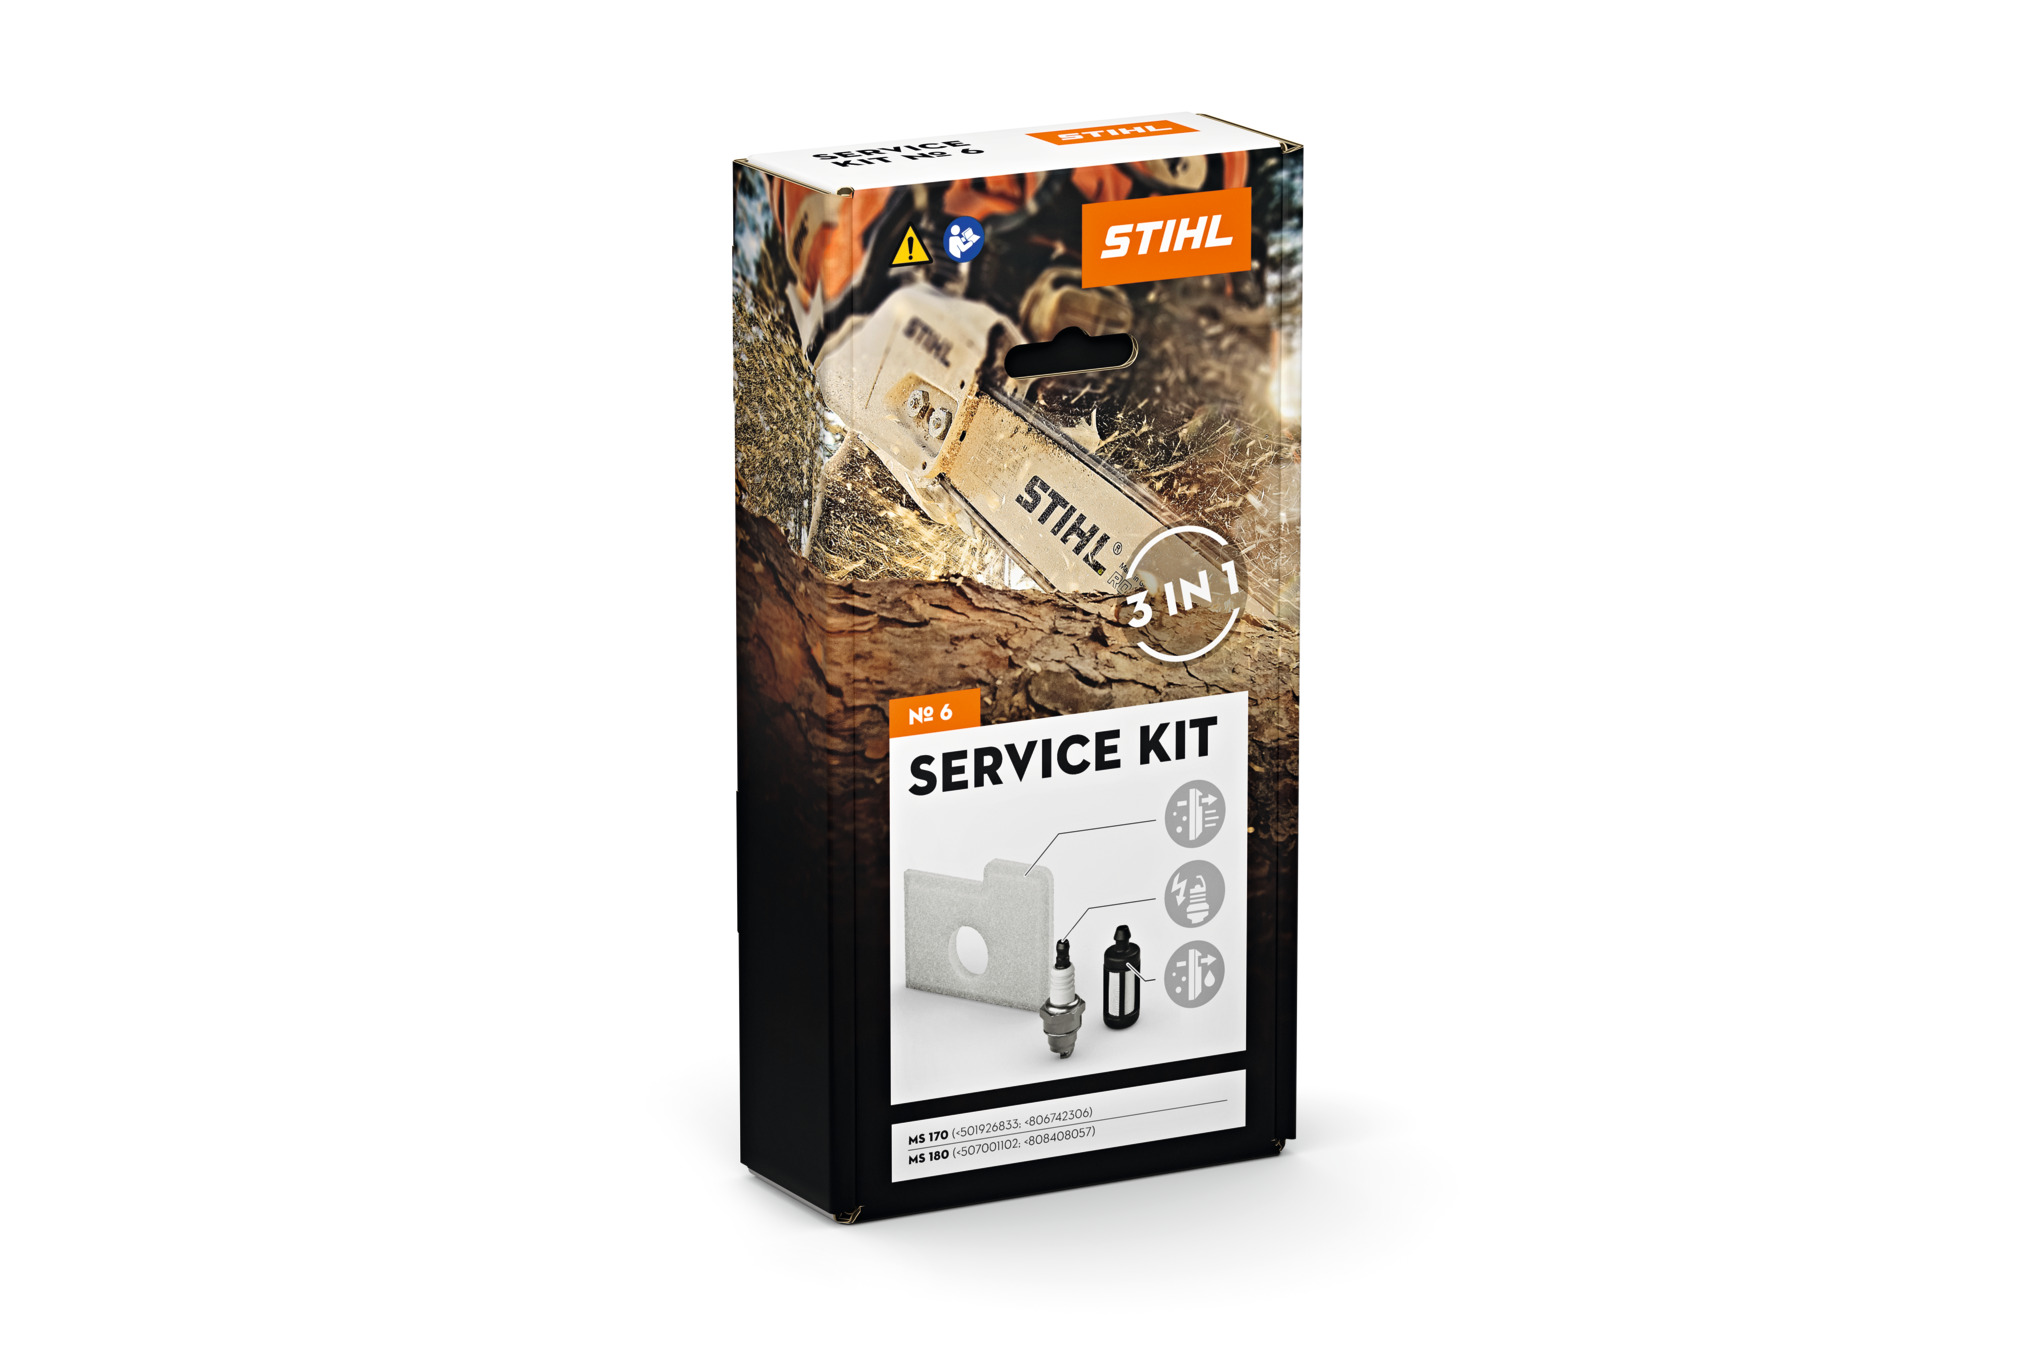 Service Kit 6